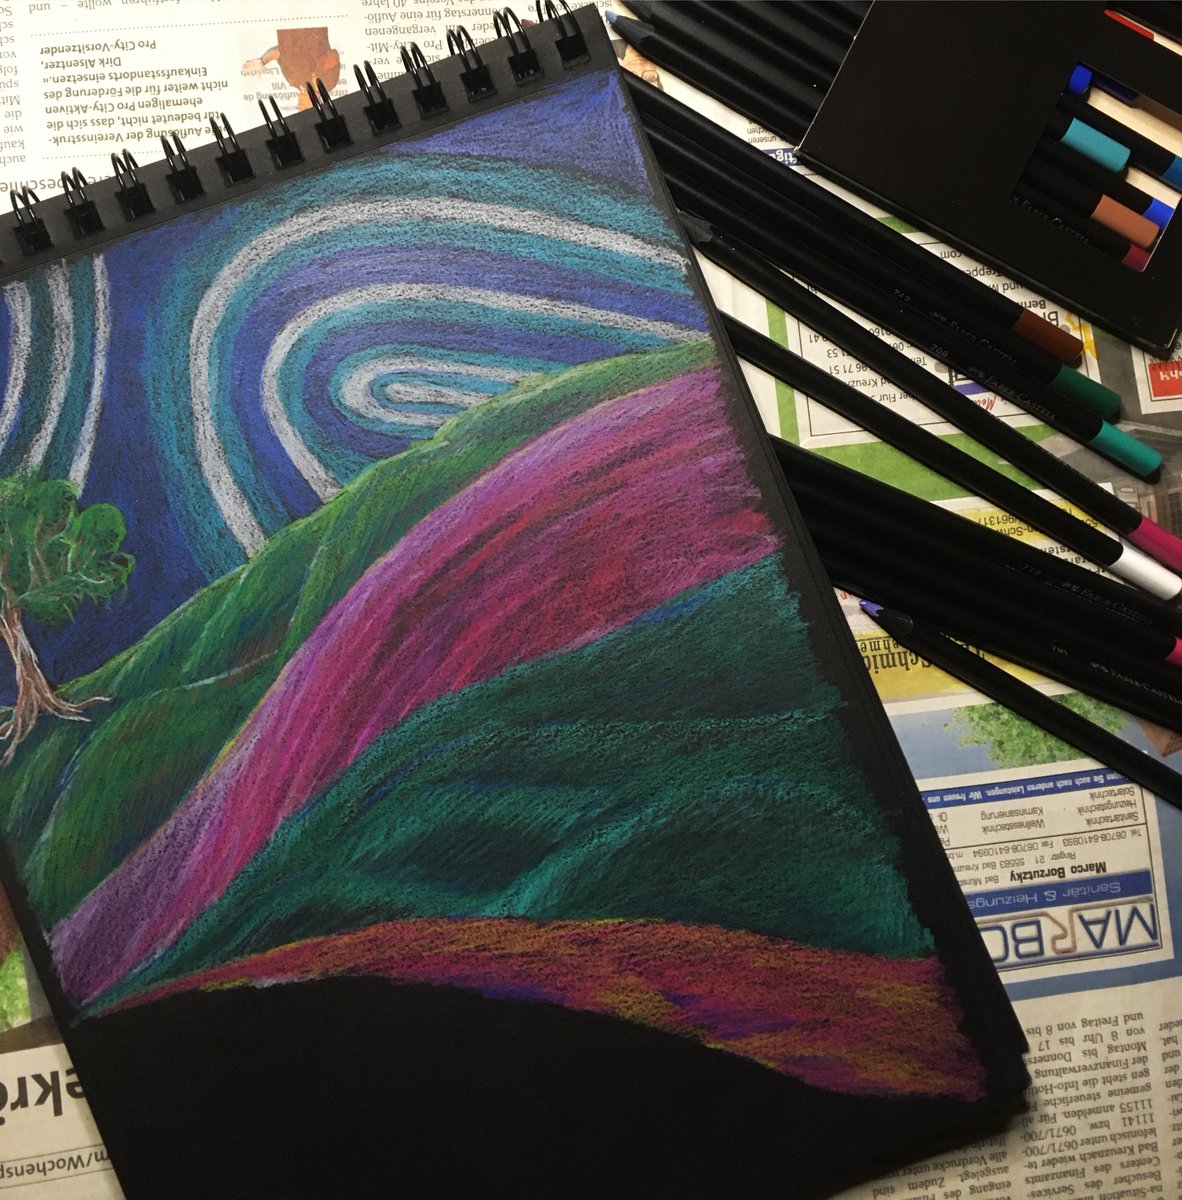 Buntstifte - Coloured pencils - work in Progress 

#kleineKunstklasse #colouredpencil